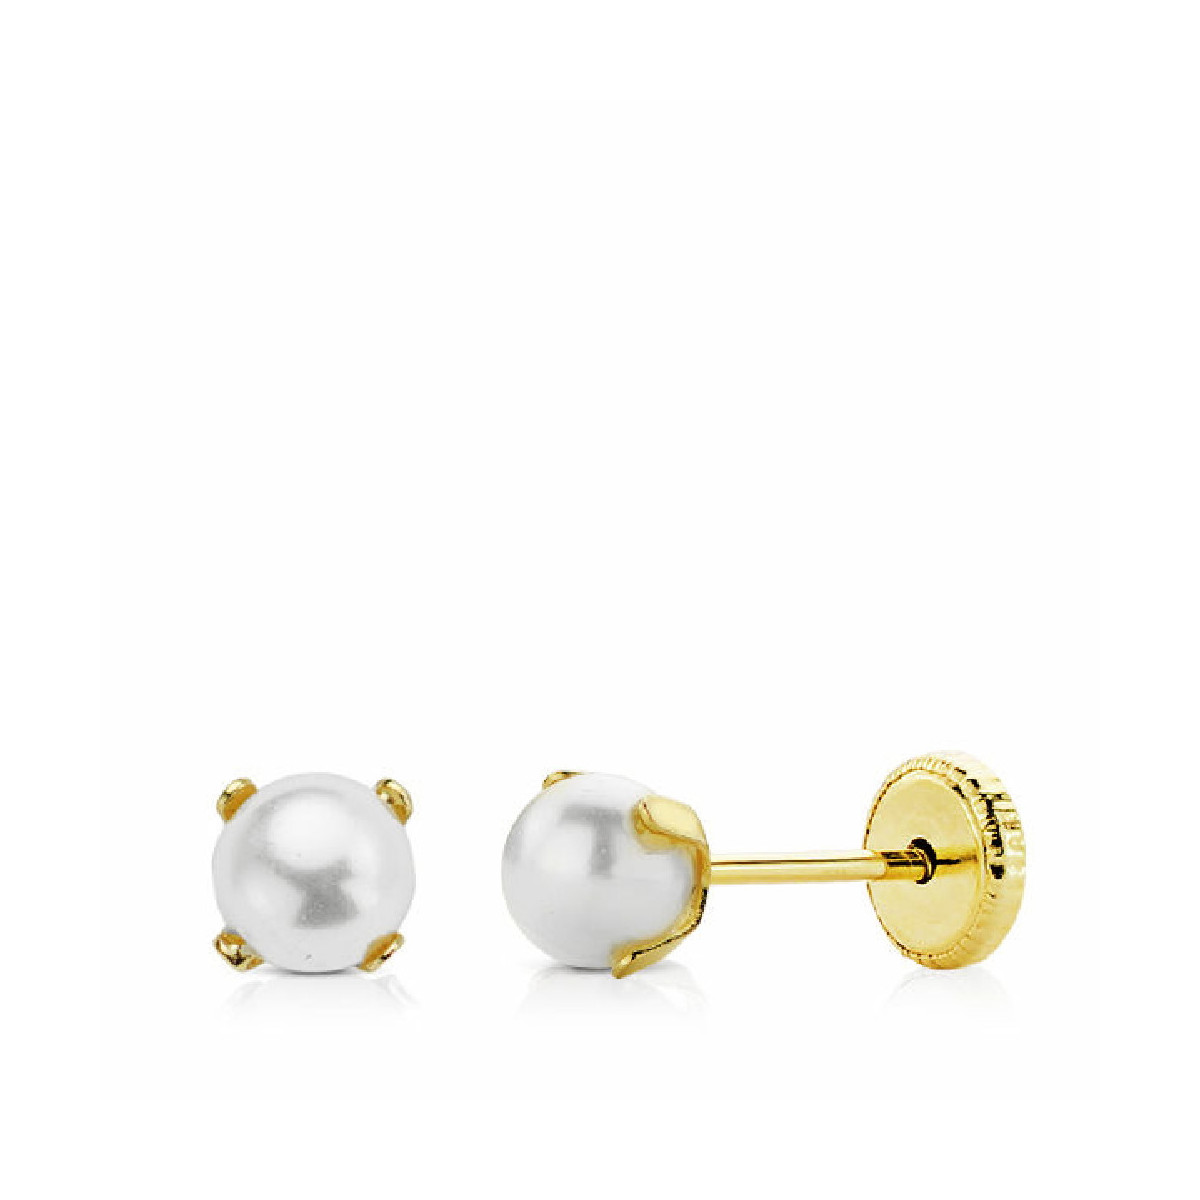 Pendientes oro mini perla 5mm